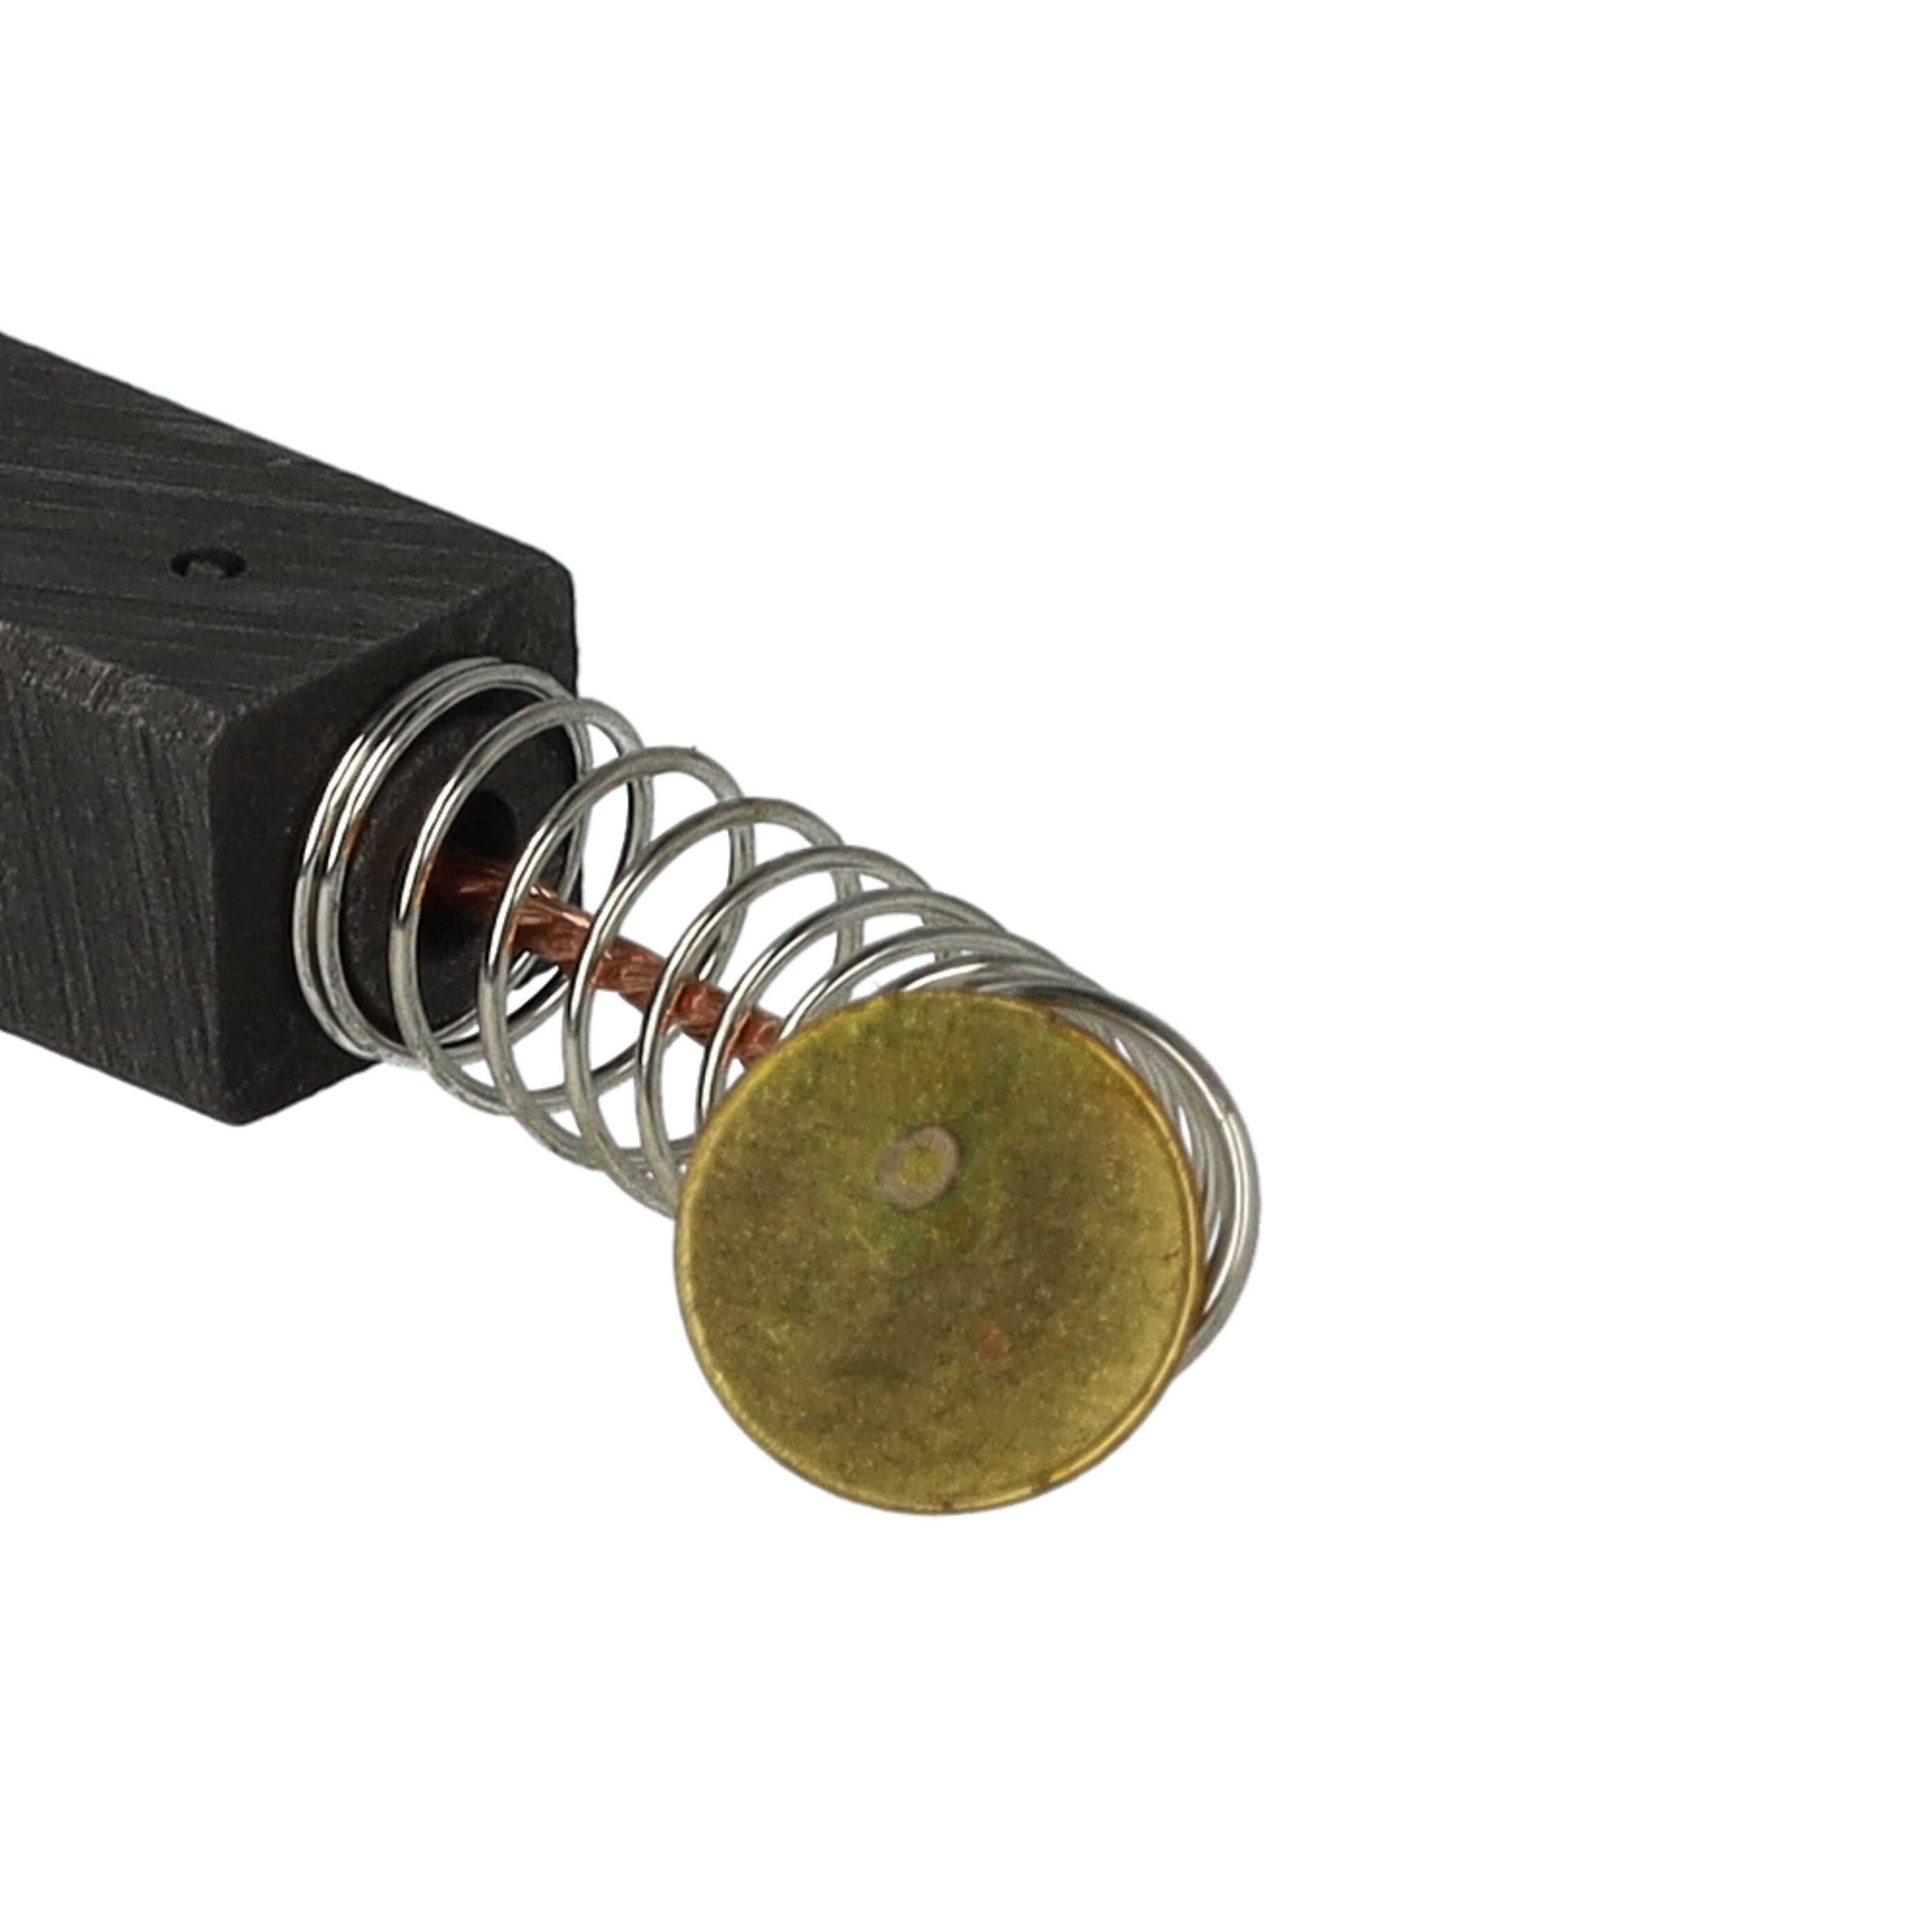 2x Spazzola carbone sostituisce Bosch 2604321905 per utensili + molla, 19 x 13 x 12 mm